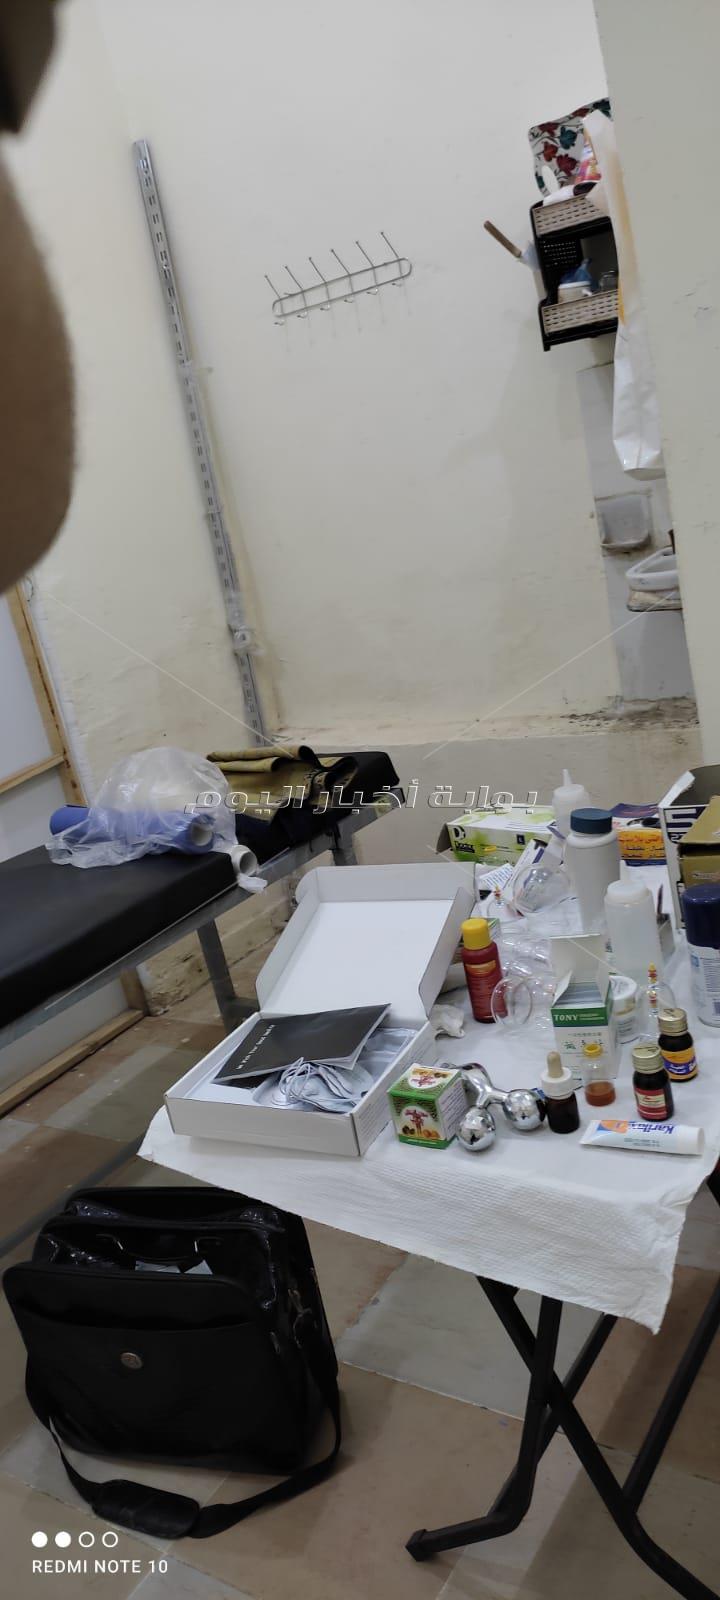 غلق وتشميع مركز مشهور للعلاج بالحجامة بدون ترخيص بداخلة أدوية مجهولة بمدينة نصر 